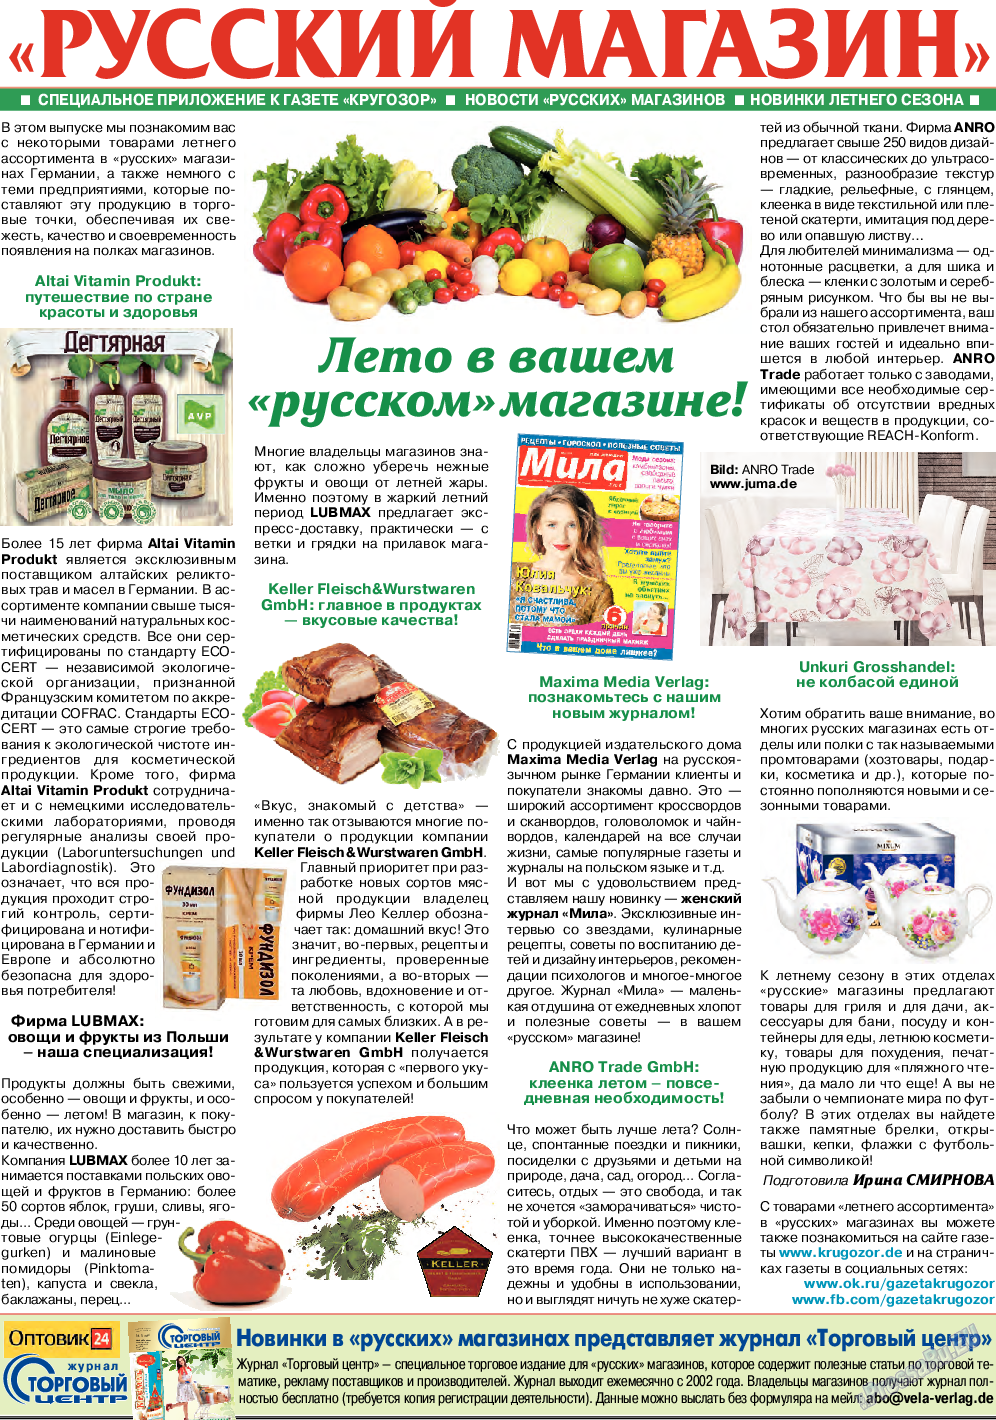 Кругозор (газета). 2018 год, номер 6, стр. 25